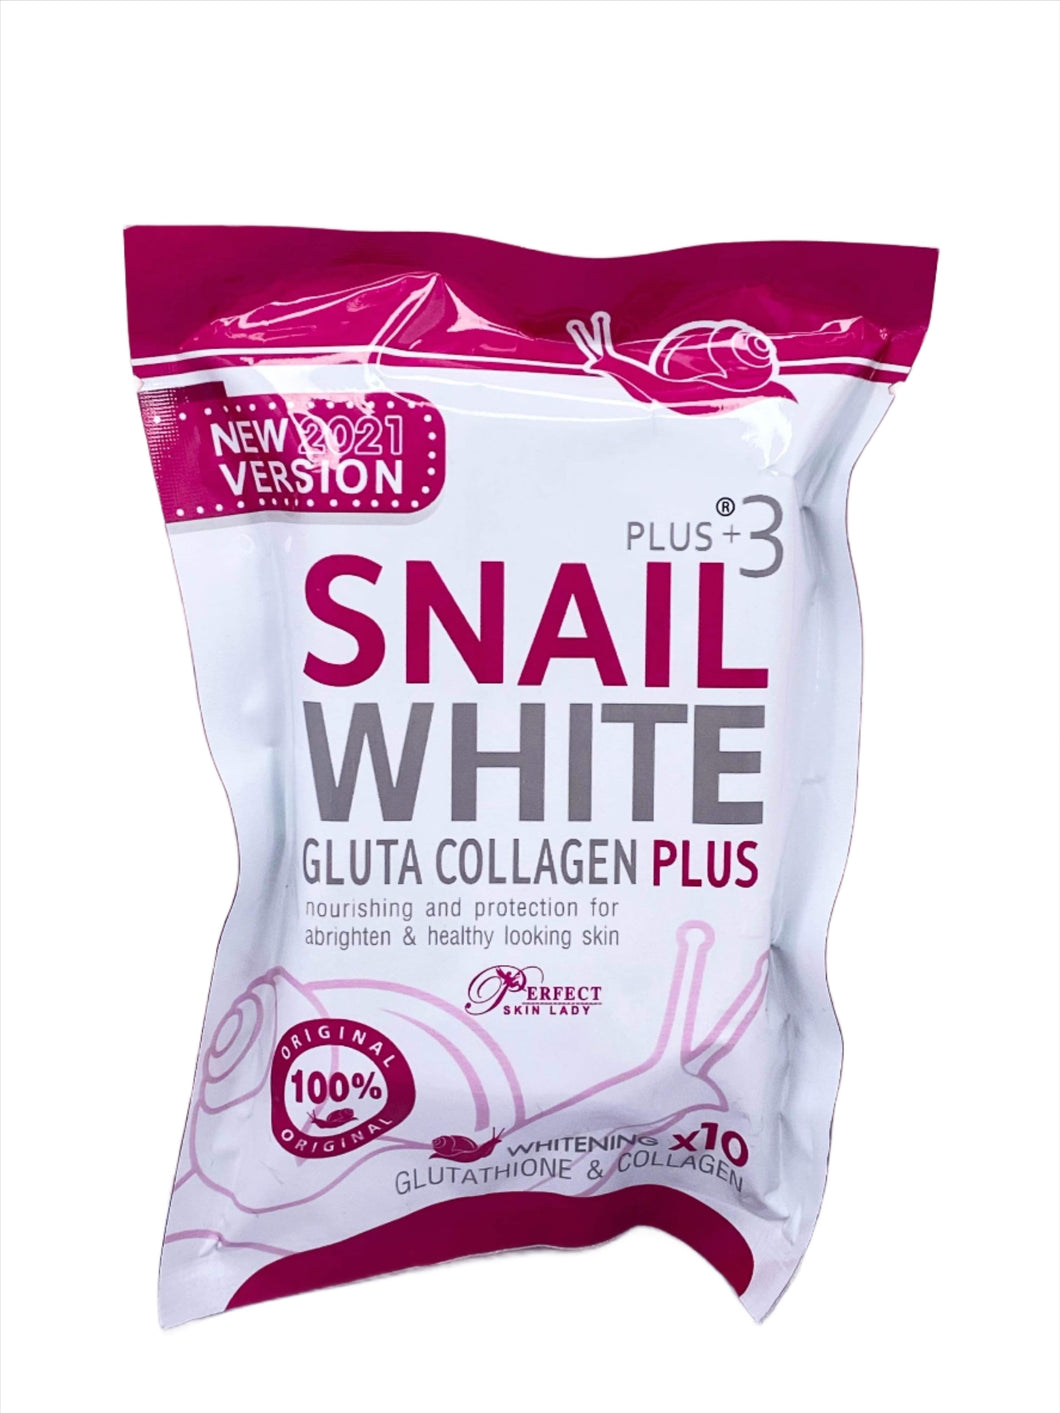 Snail White Gluta Collagen Plus Whitening x10 (80g) Authentic Thailand